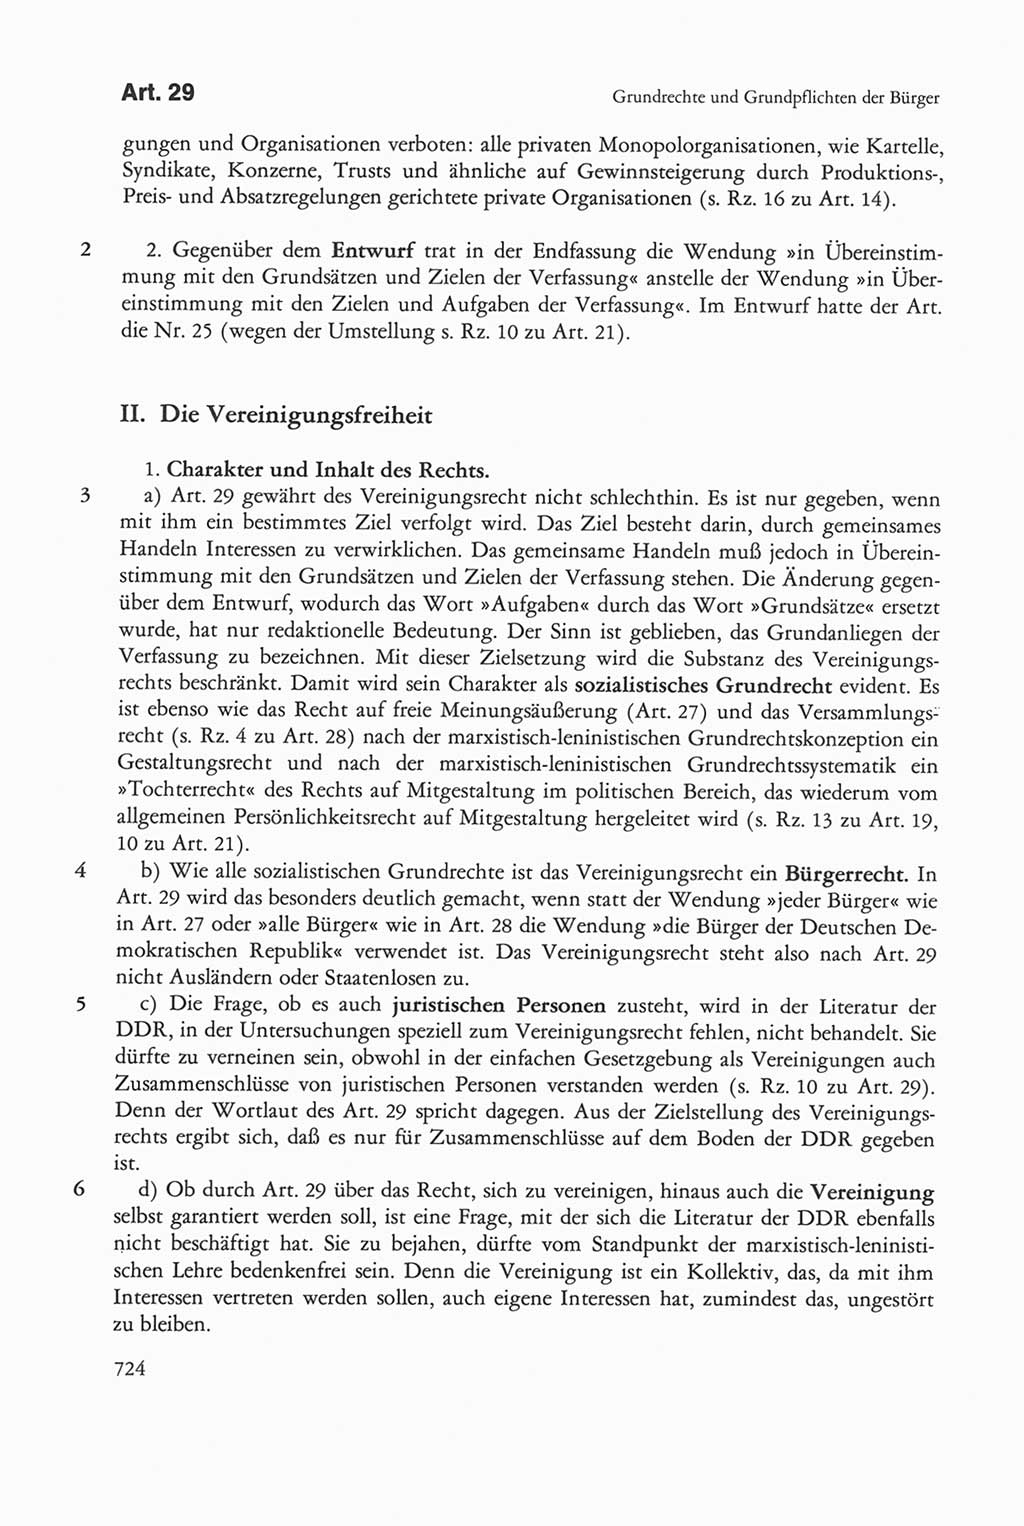 Die sozialistische Verfassung der Deutschen Demokratischen Republik (DDR), Kommentar mit einem Nachtrag 1997, Seite 724 (Soz. Verf. DDR Komm. Nachtr. 1997, S. 724)